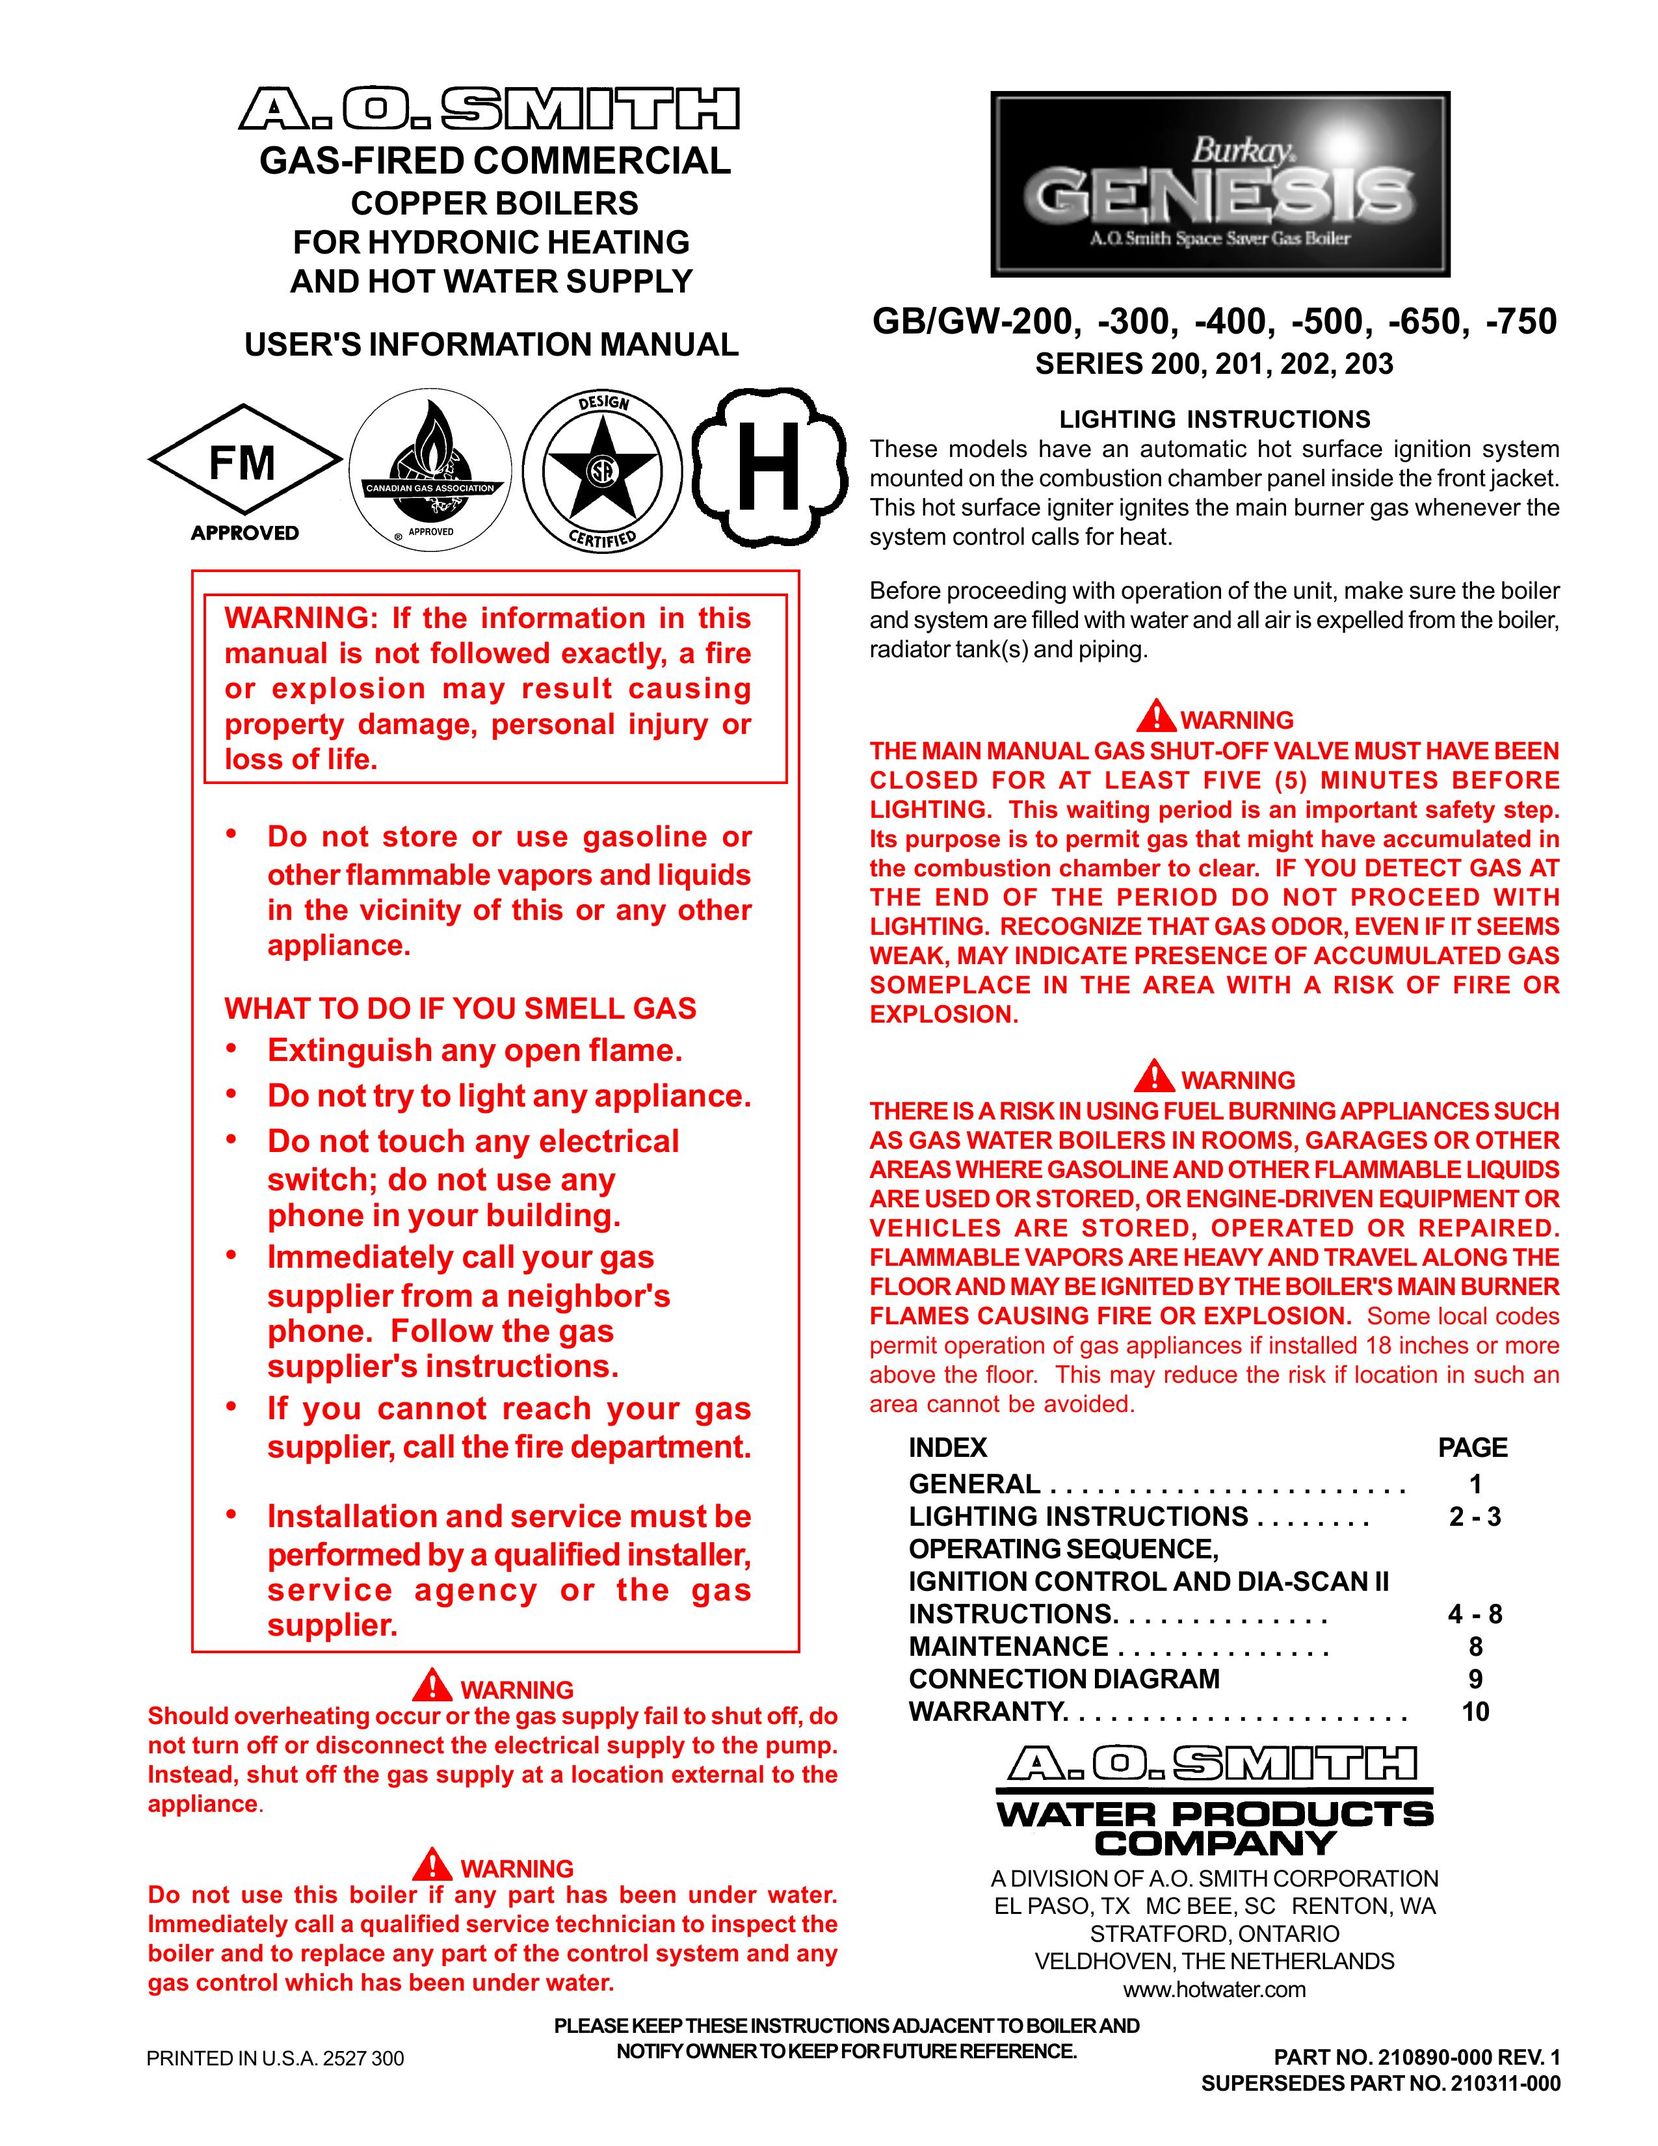 A.O. Smith GB/GW-200 Boiler User Manual